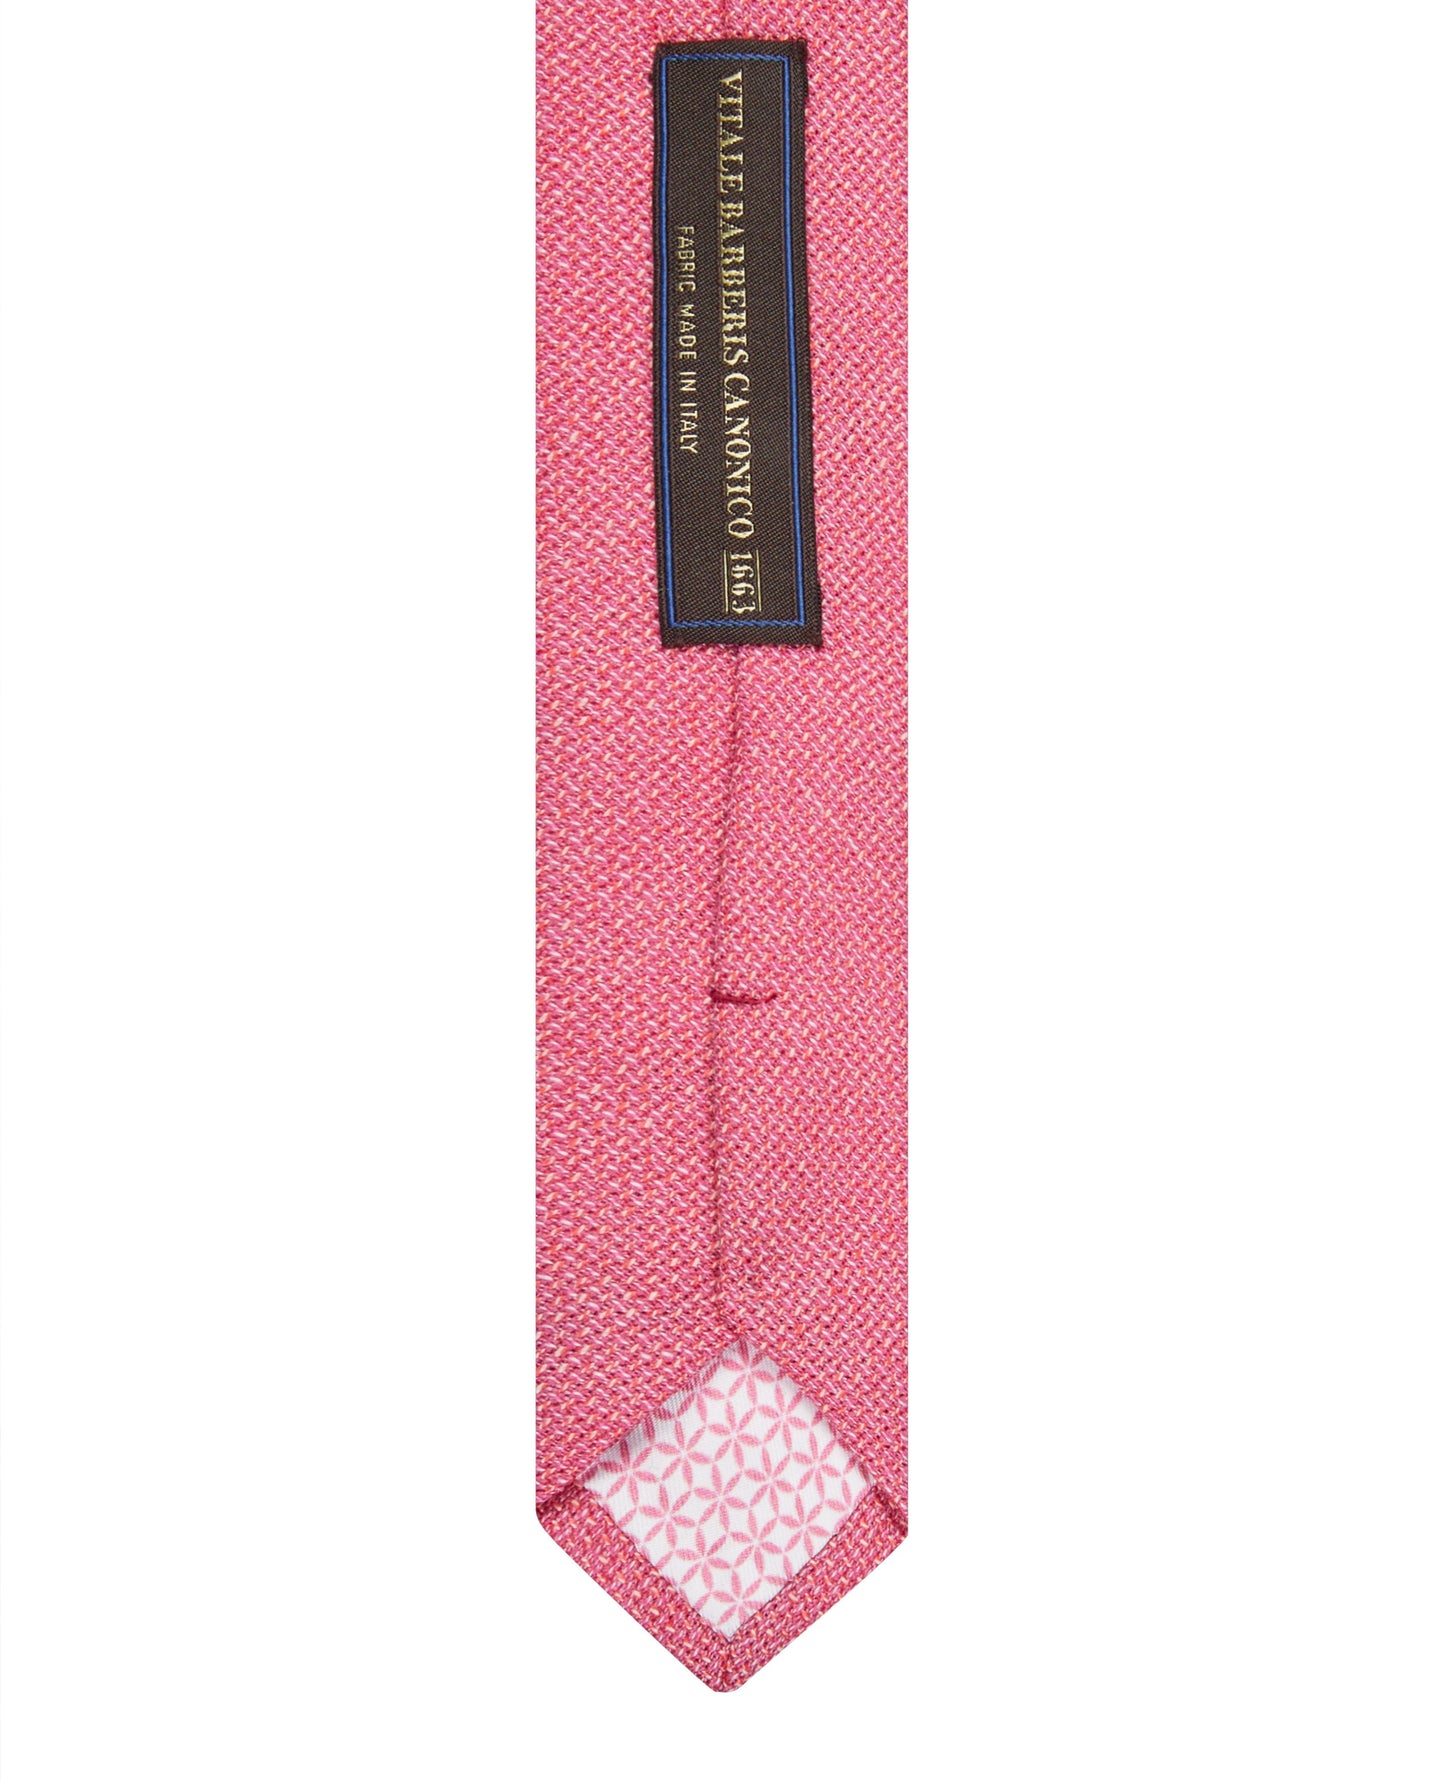 Barberis Slim Pink Textured Wool Tie